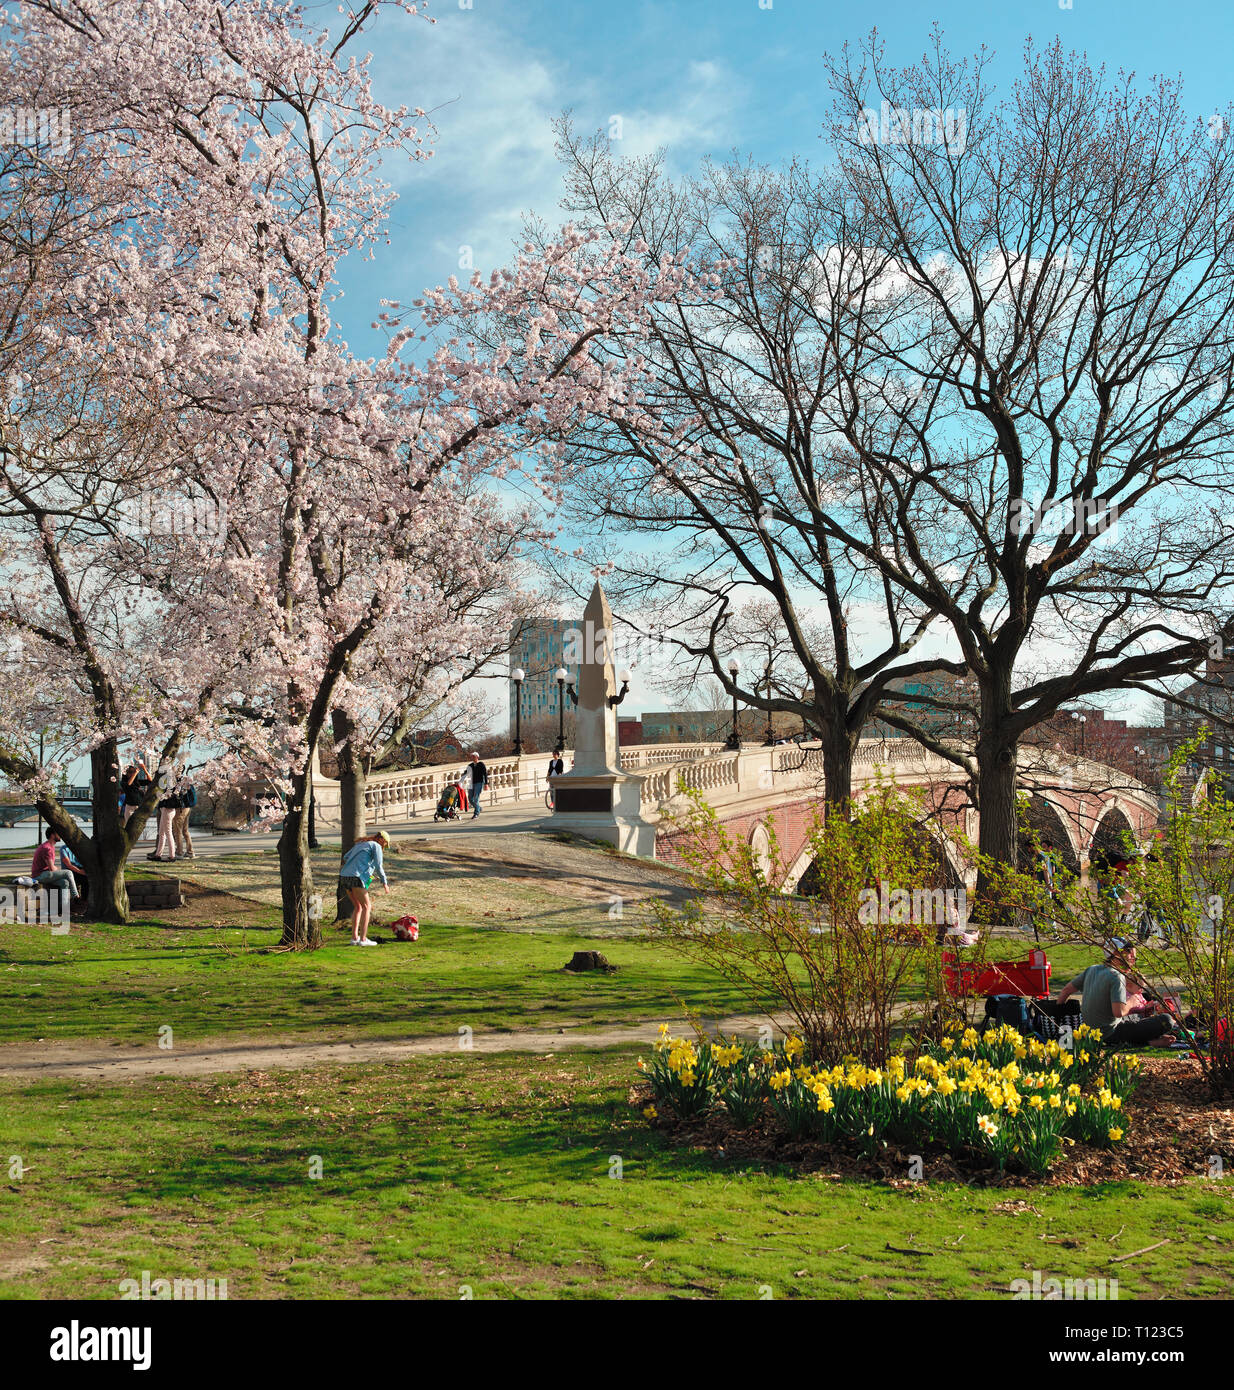 Settimane passerella in primavera. La gente venuta fuori a godersi il bel tempo tra fiori di ciliegio e narcisi sul Charles River Bank. Cambridge, MA Foto Stock